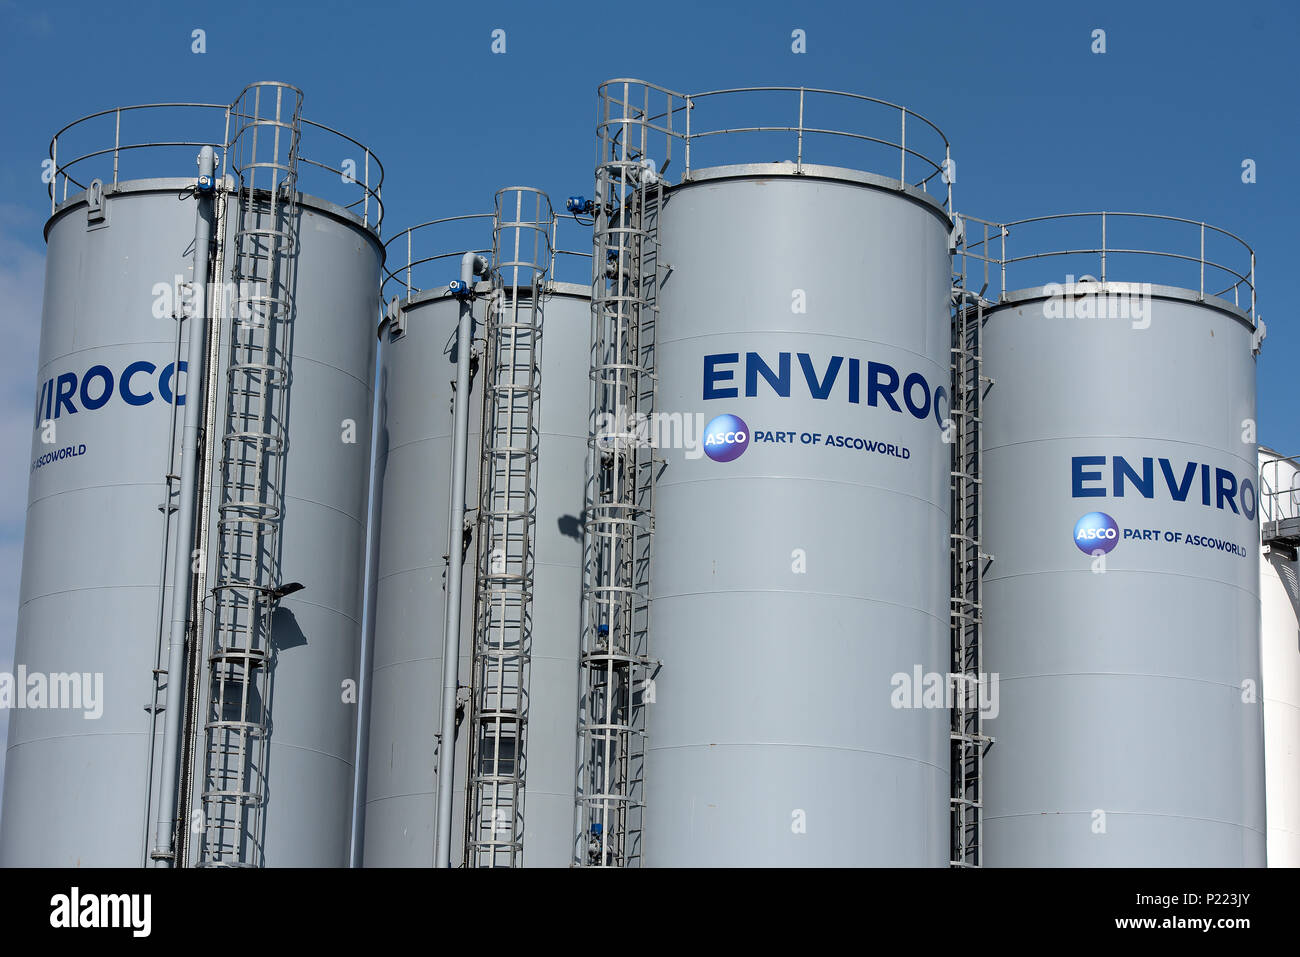 Silos, die Teil der Enviroco zu Ascoworld Branchen arbeiten, die in der Öl- und Abfallwirtschaft Sektoren angegliedert. Stockfoto